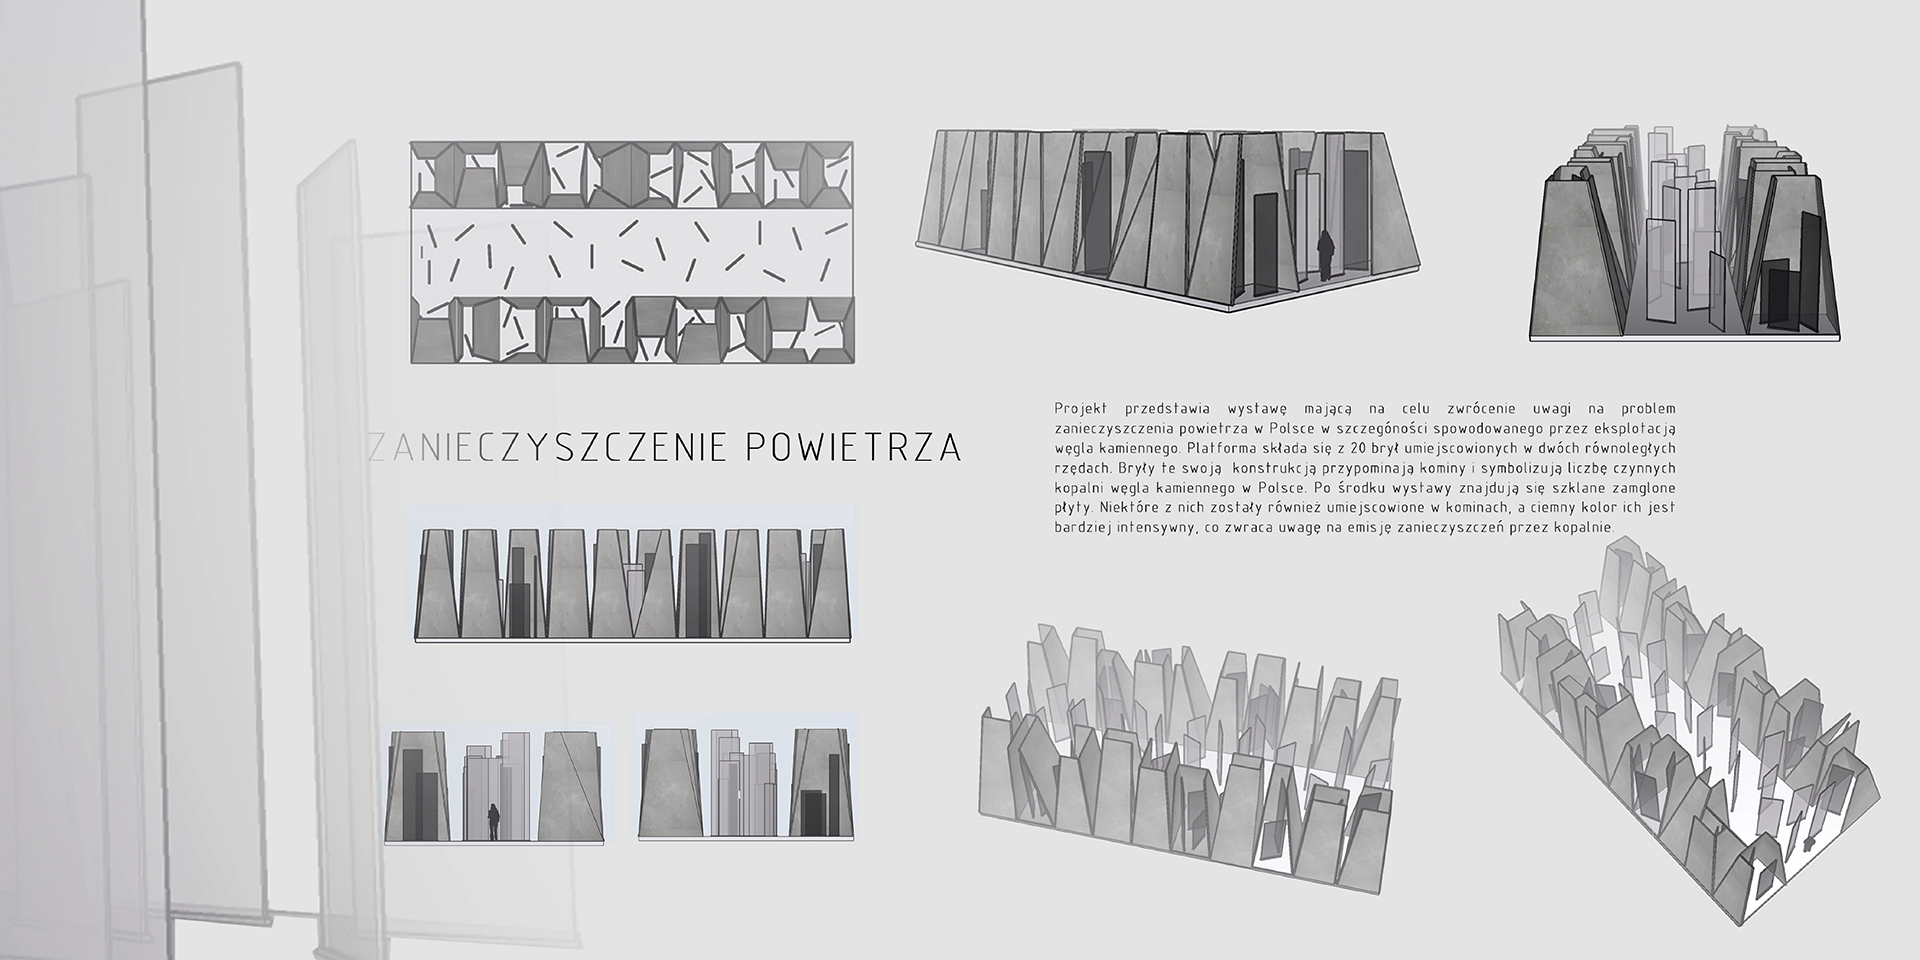 26. Plansza prezentuje projekt wystawy zewnętrznej związanej z zanieczyszczeniem powietrza. Pozioma kompozycja planszy przedstawia po lewej stronie kolorowe widoki oraz rzut. Następnie po lewej cztery barwne wizualizacje wraz z opisem projektu. 